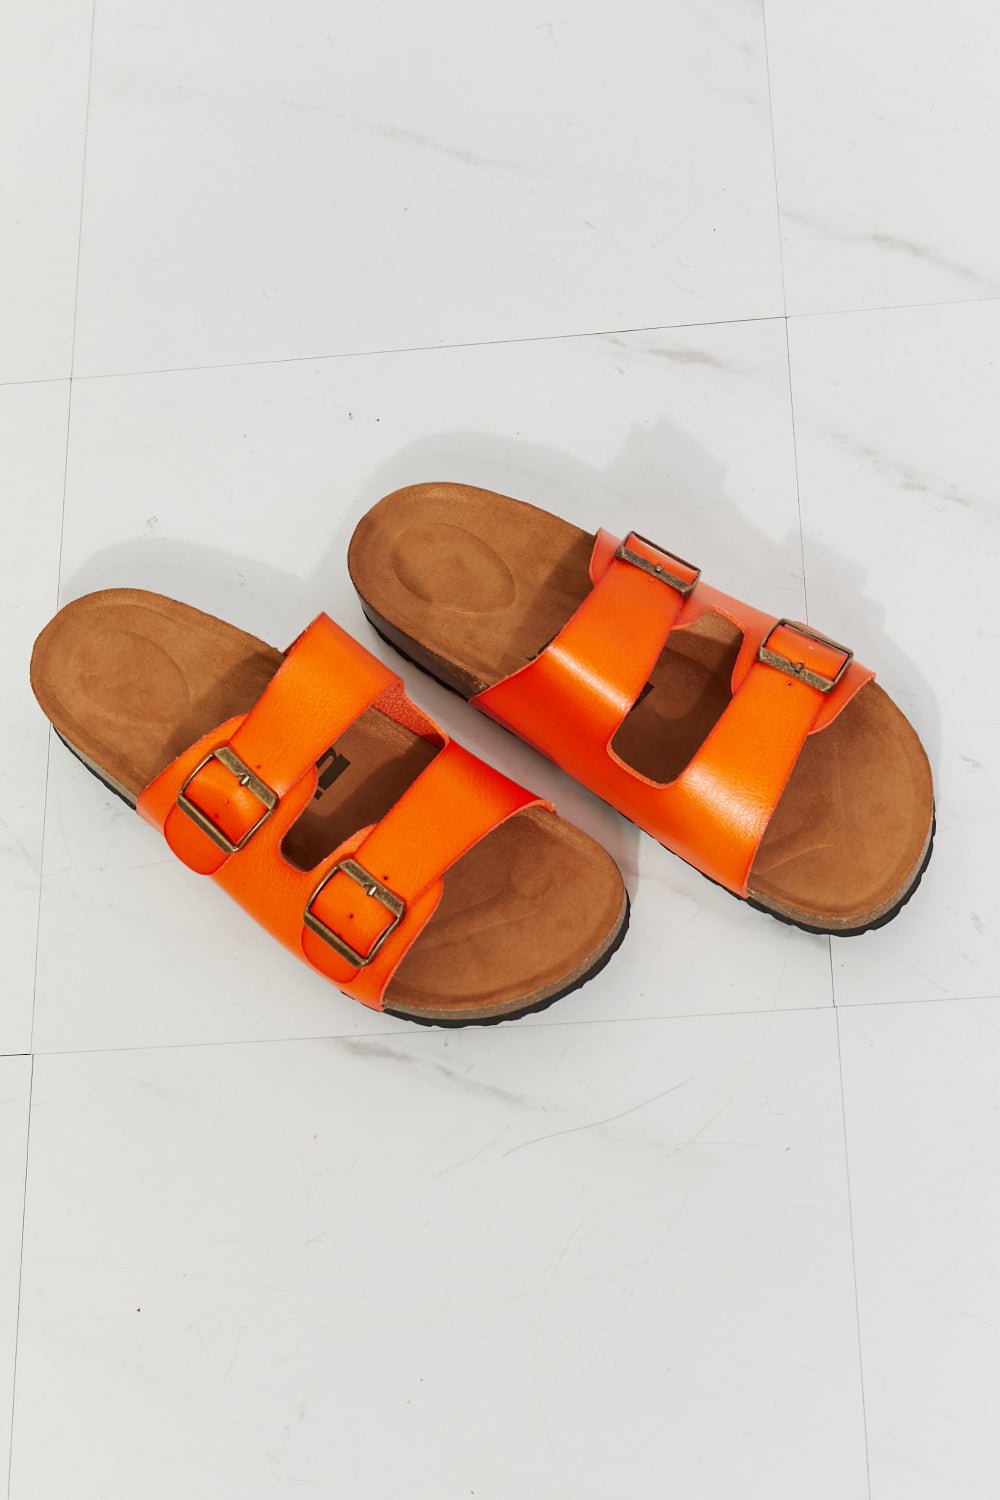 MMShoes Feeling Alive Double Banded Slide Sandals in Orange - OMG! Rose